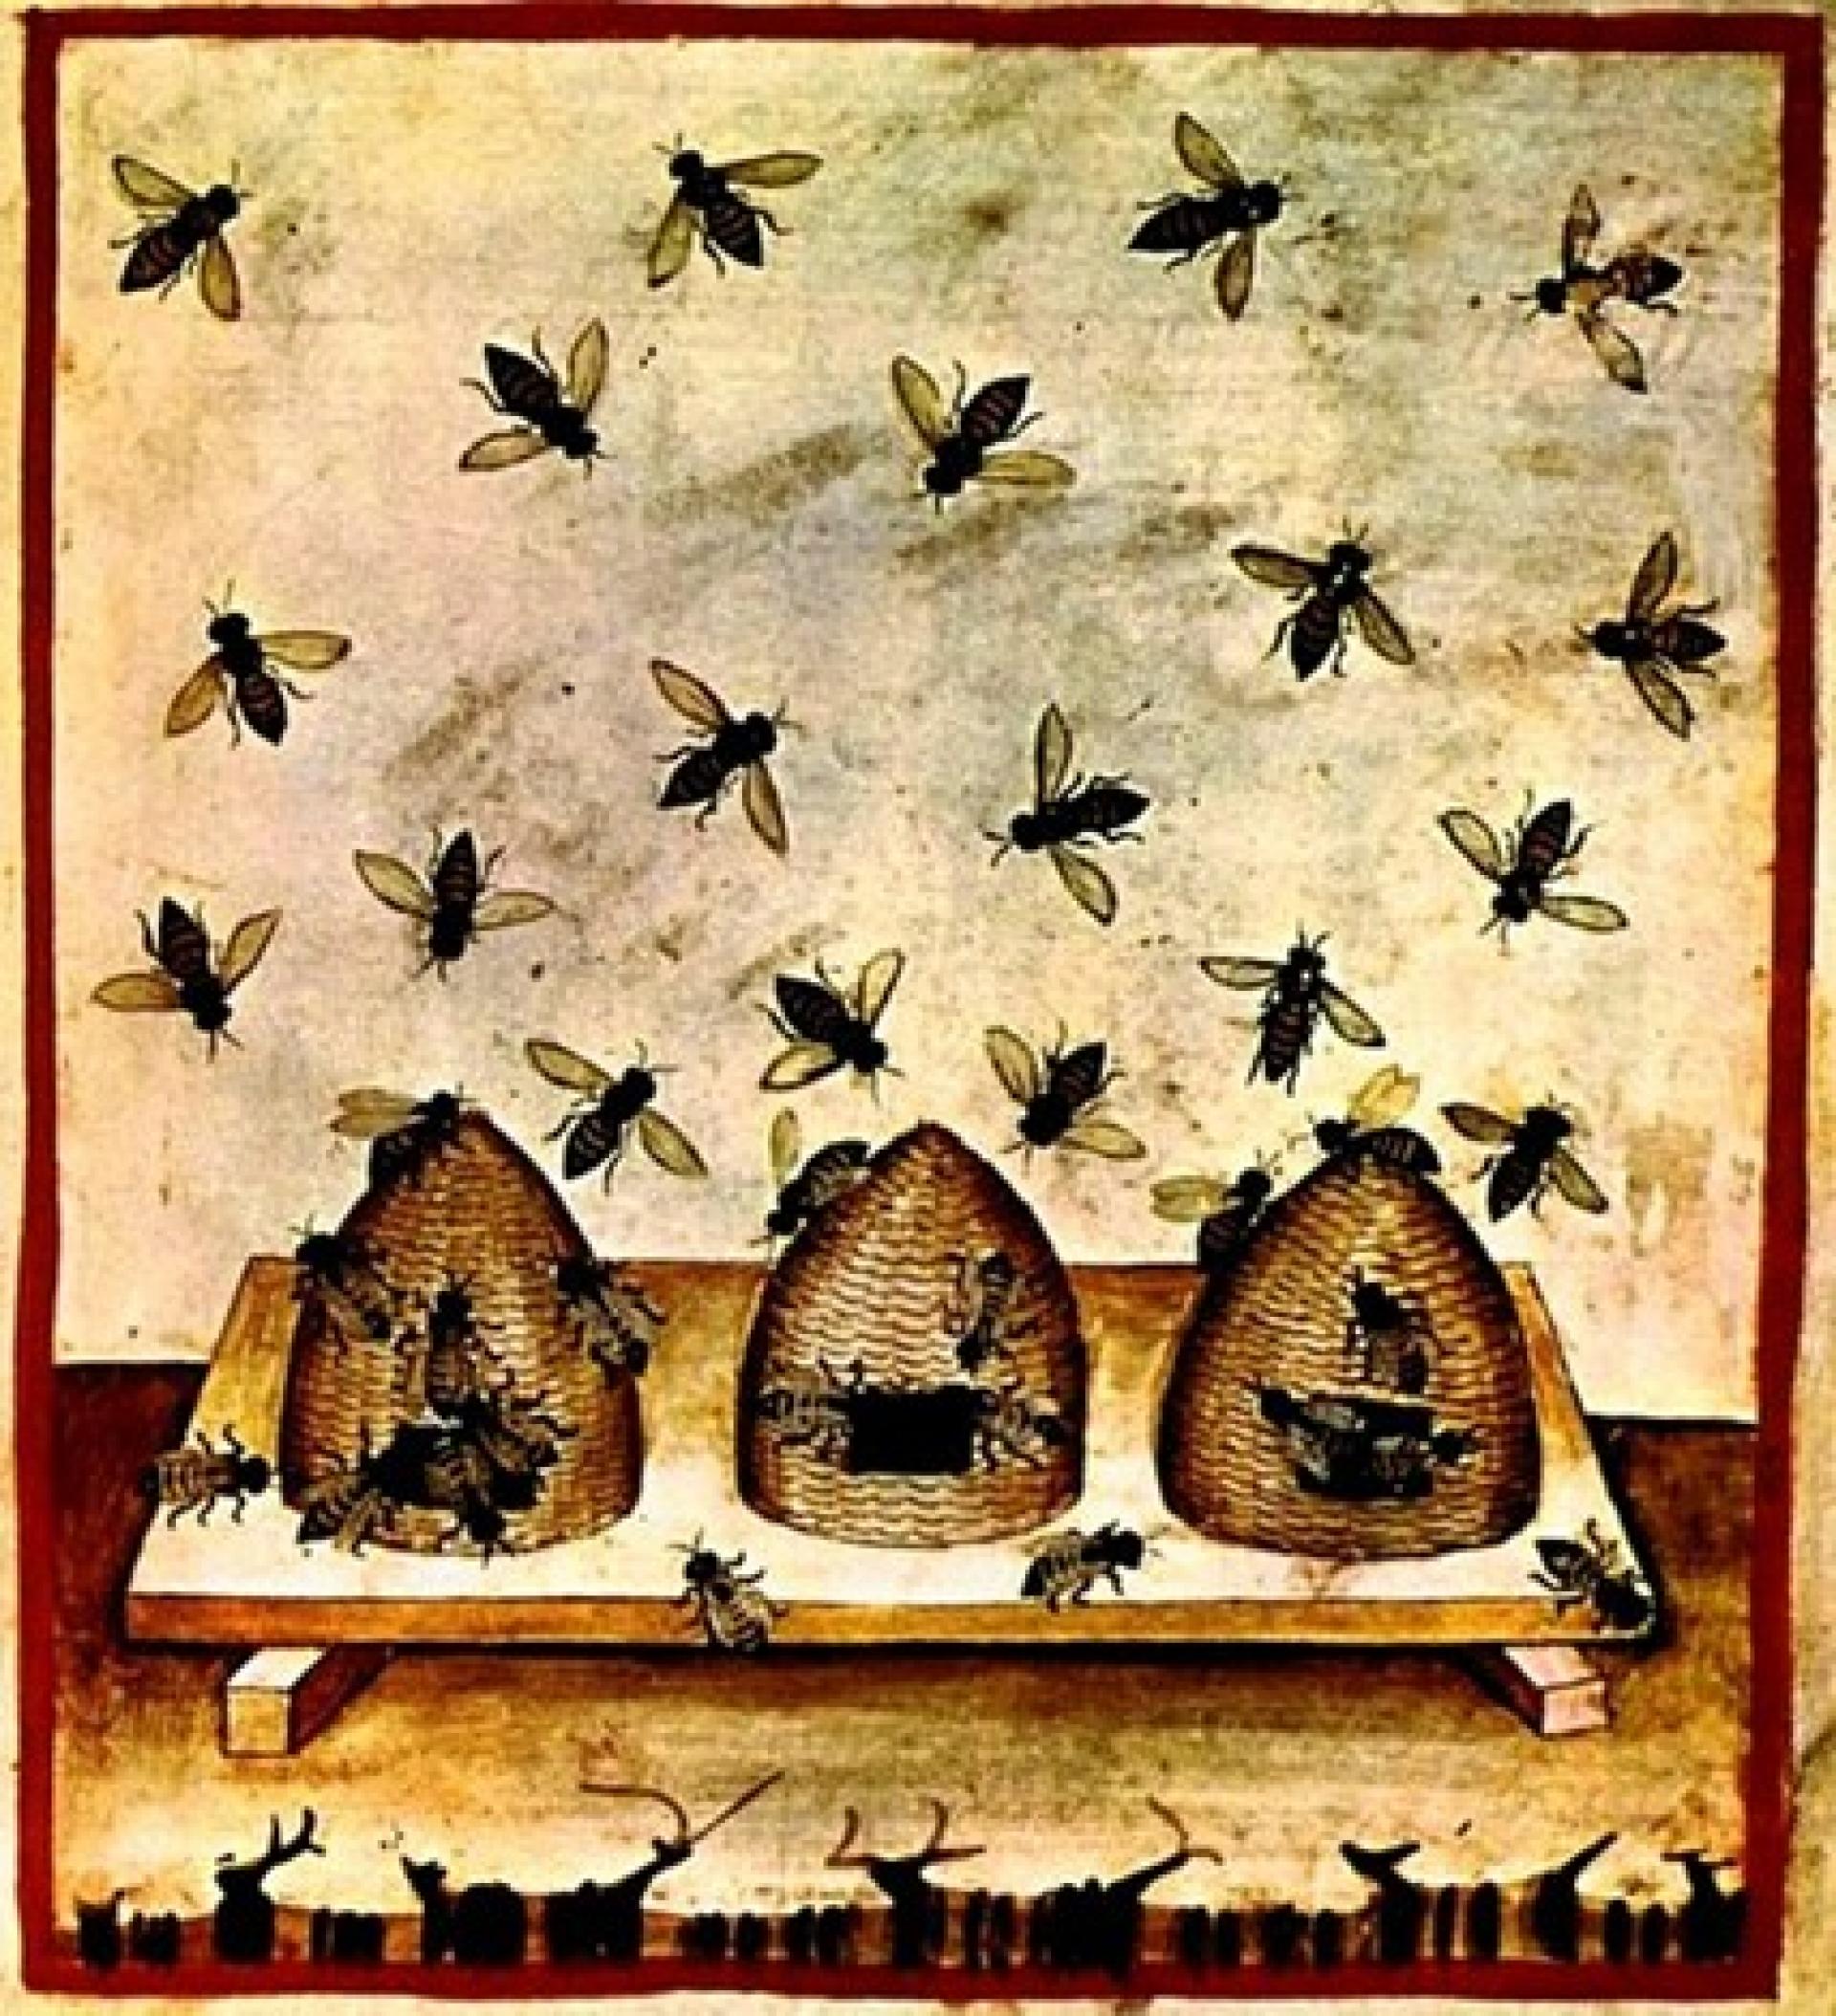 Lezing: De geschiedenis van honing